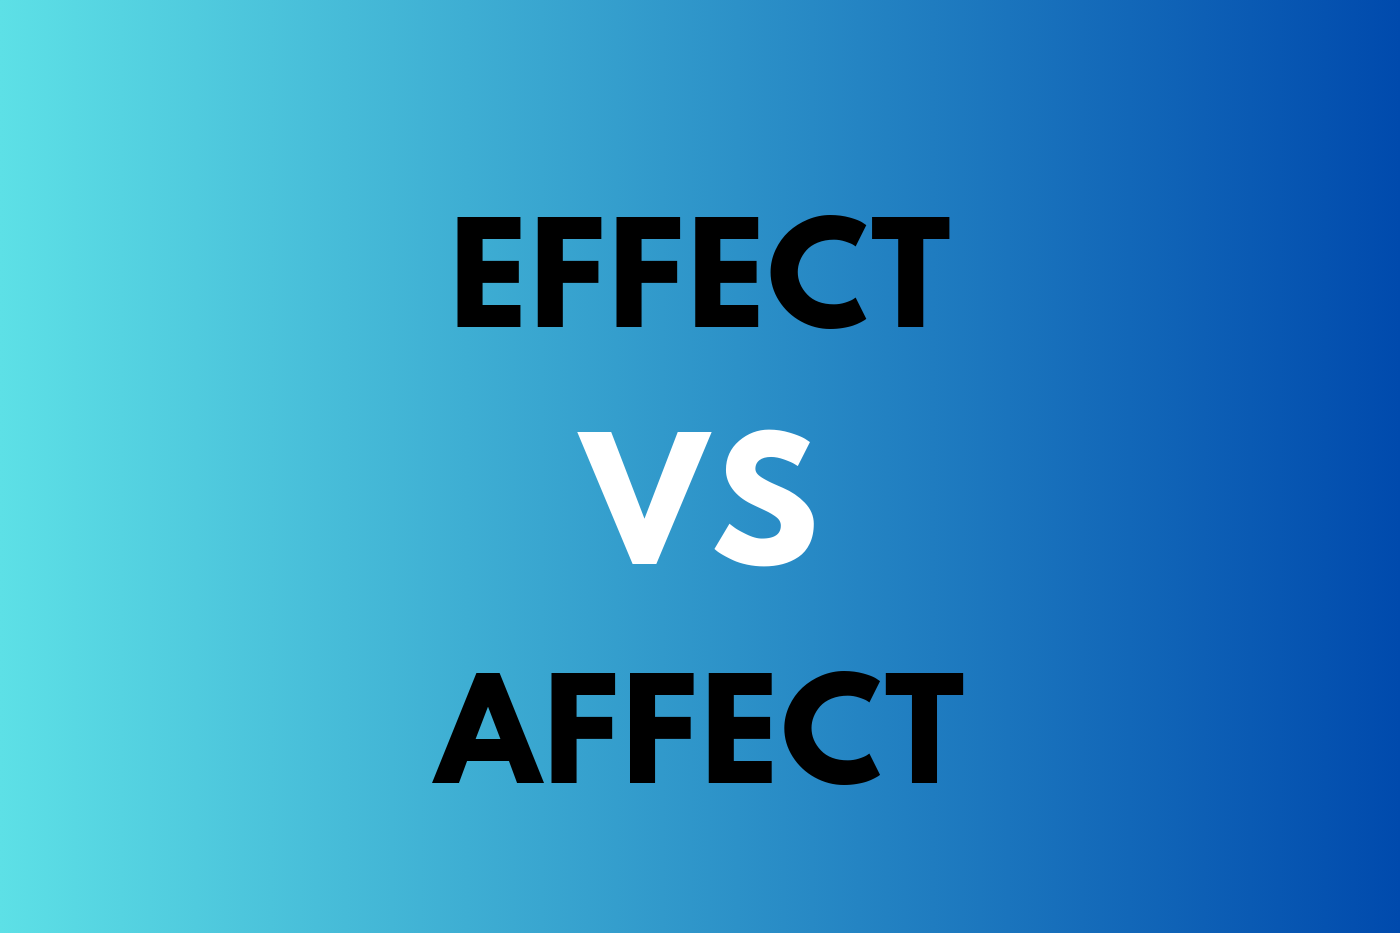 effect vs affect